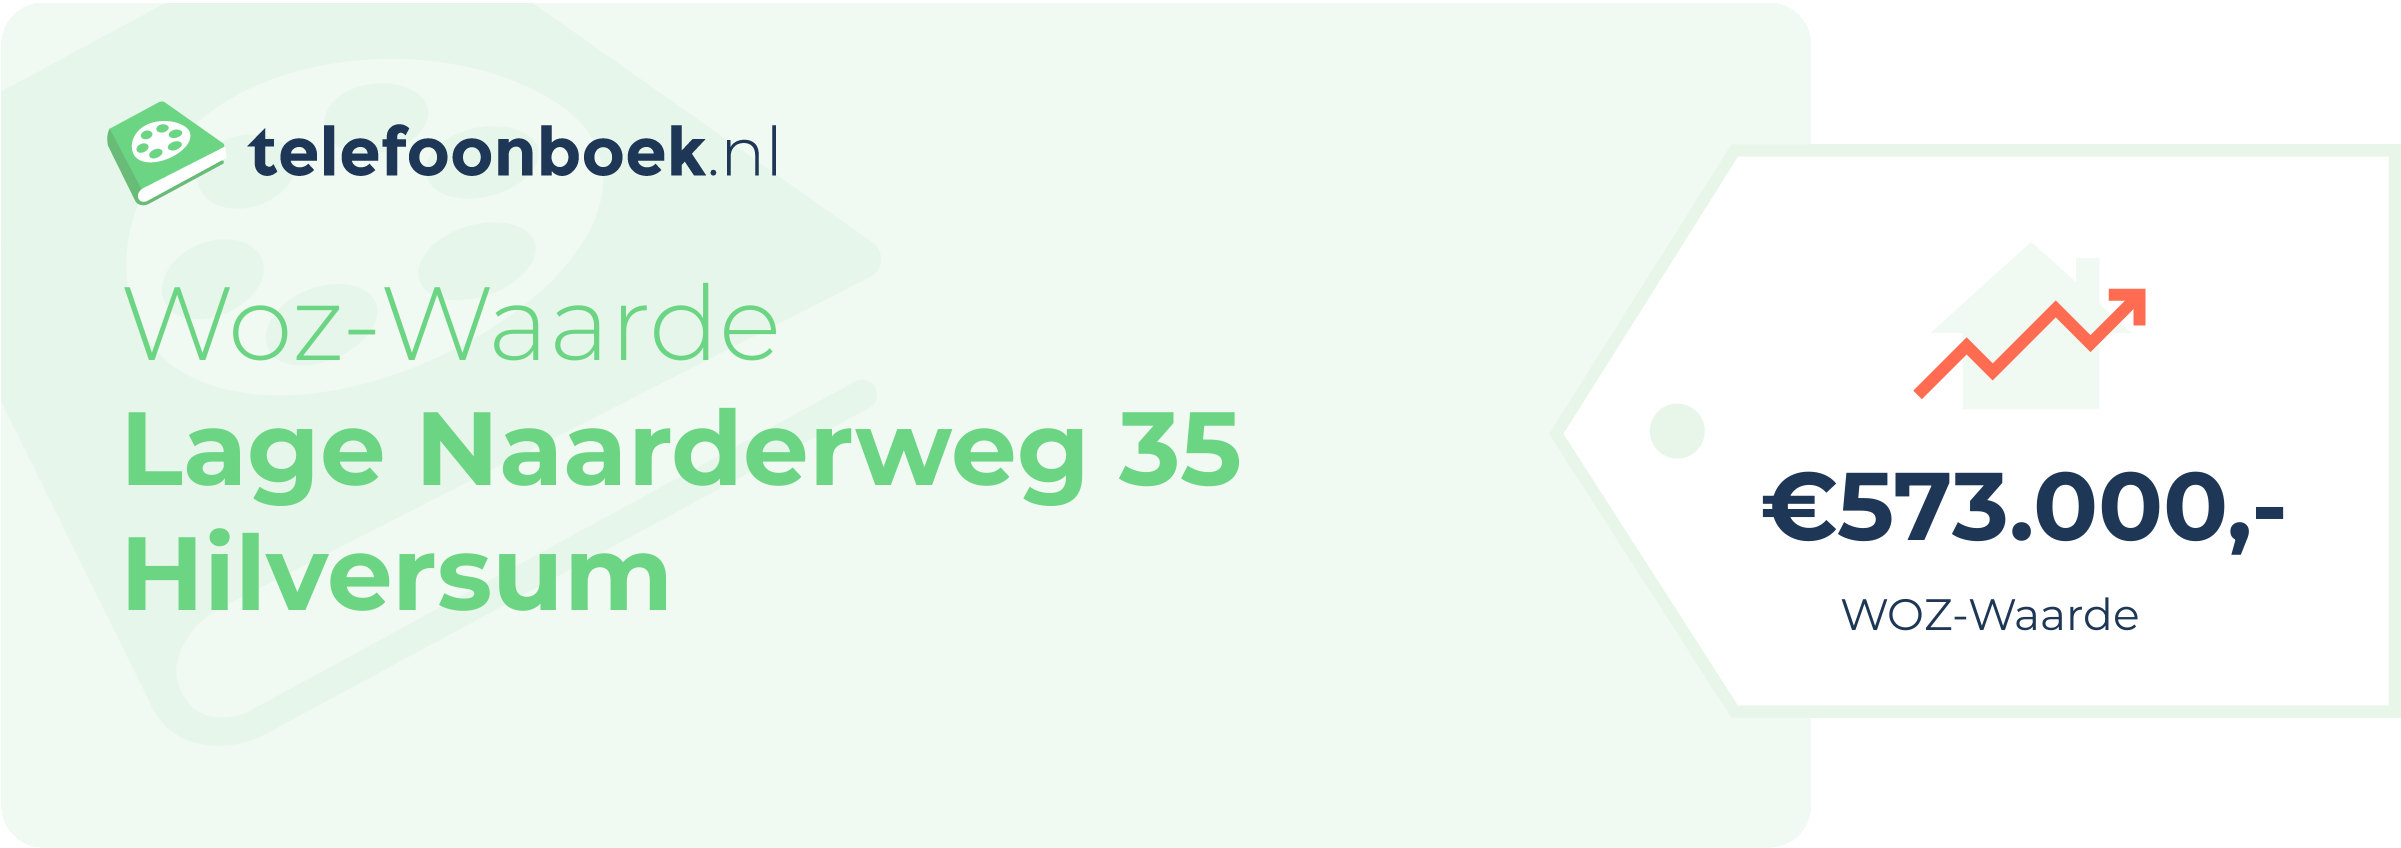 WOZ-waarde Lage Naarderweg 35 Hilversum